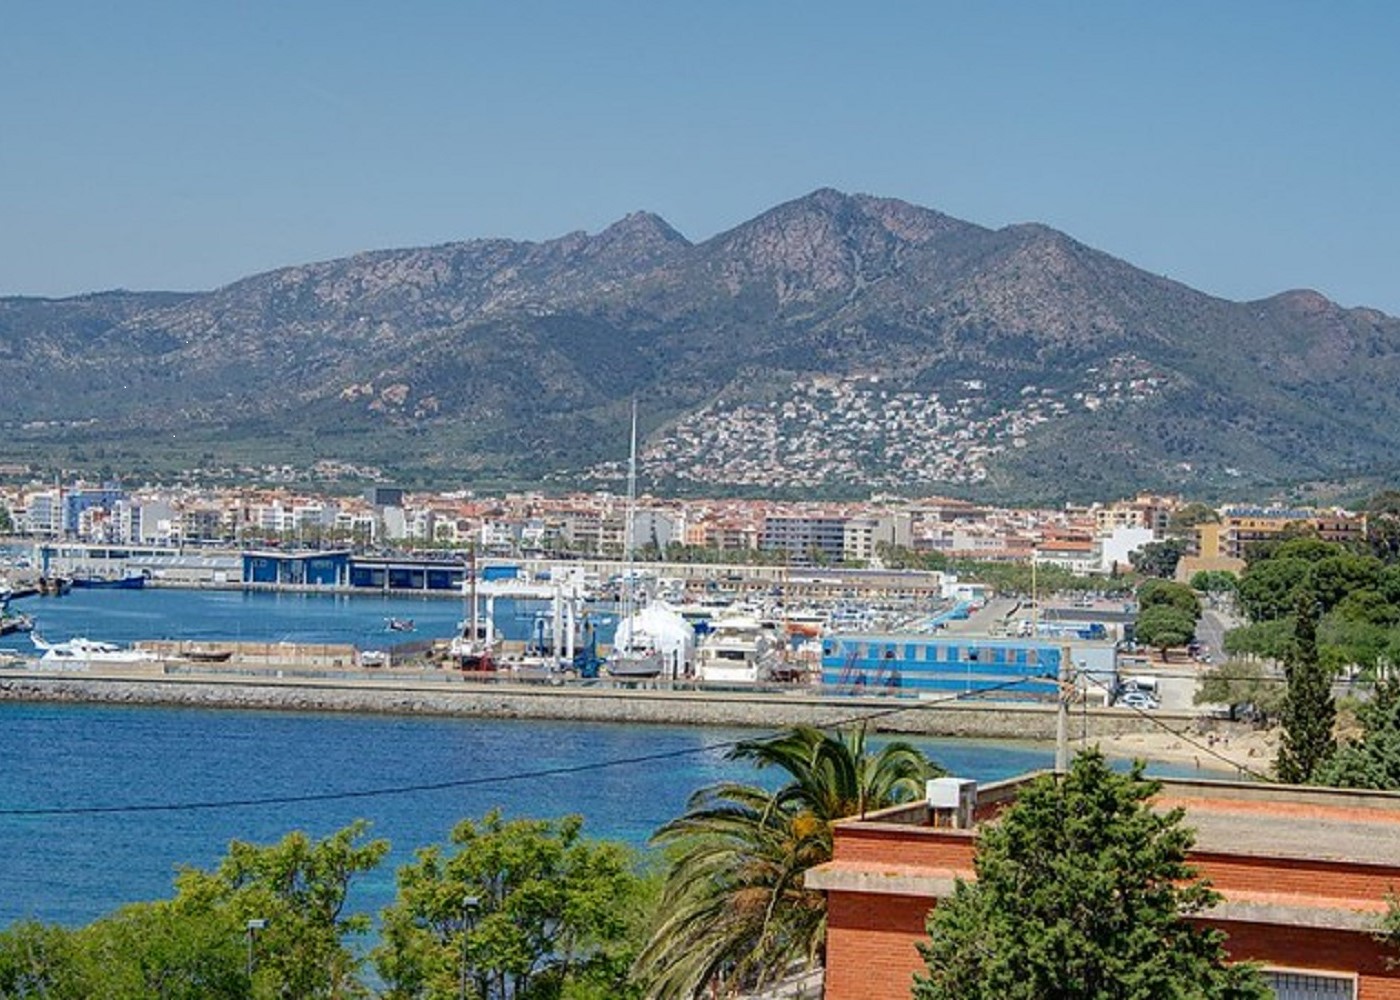 Foto panorámica del puerto deportivo de Roses en Girona. Ideal para pasar disfrutar con tu perro.